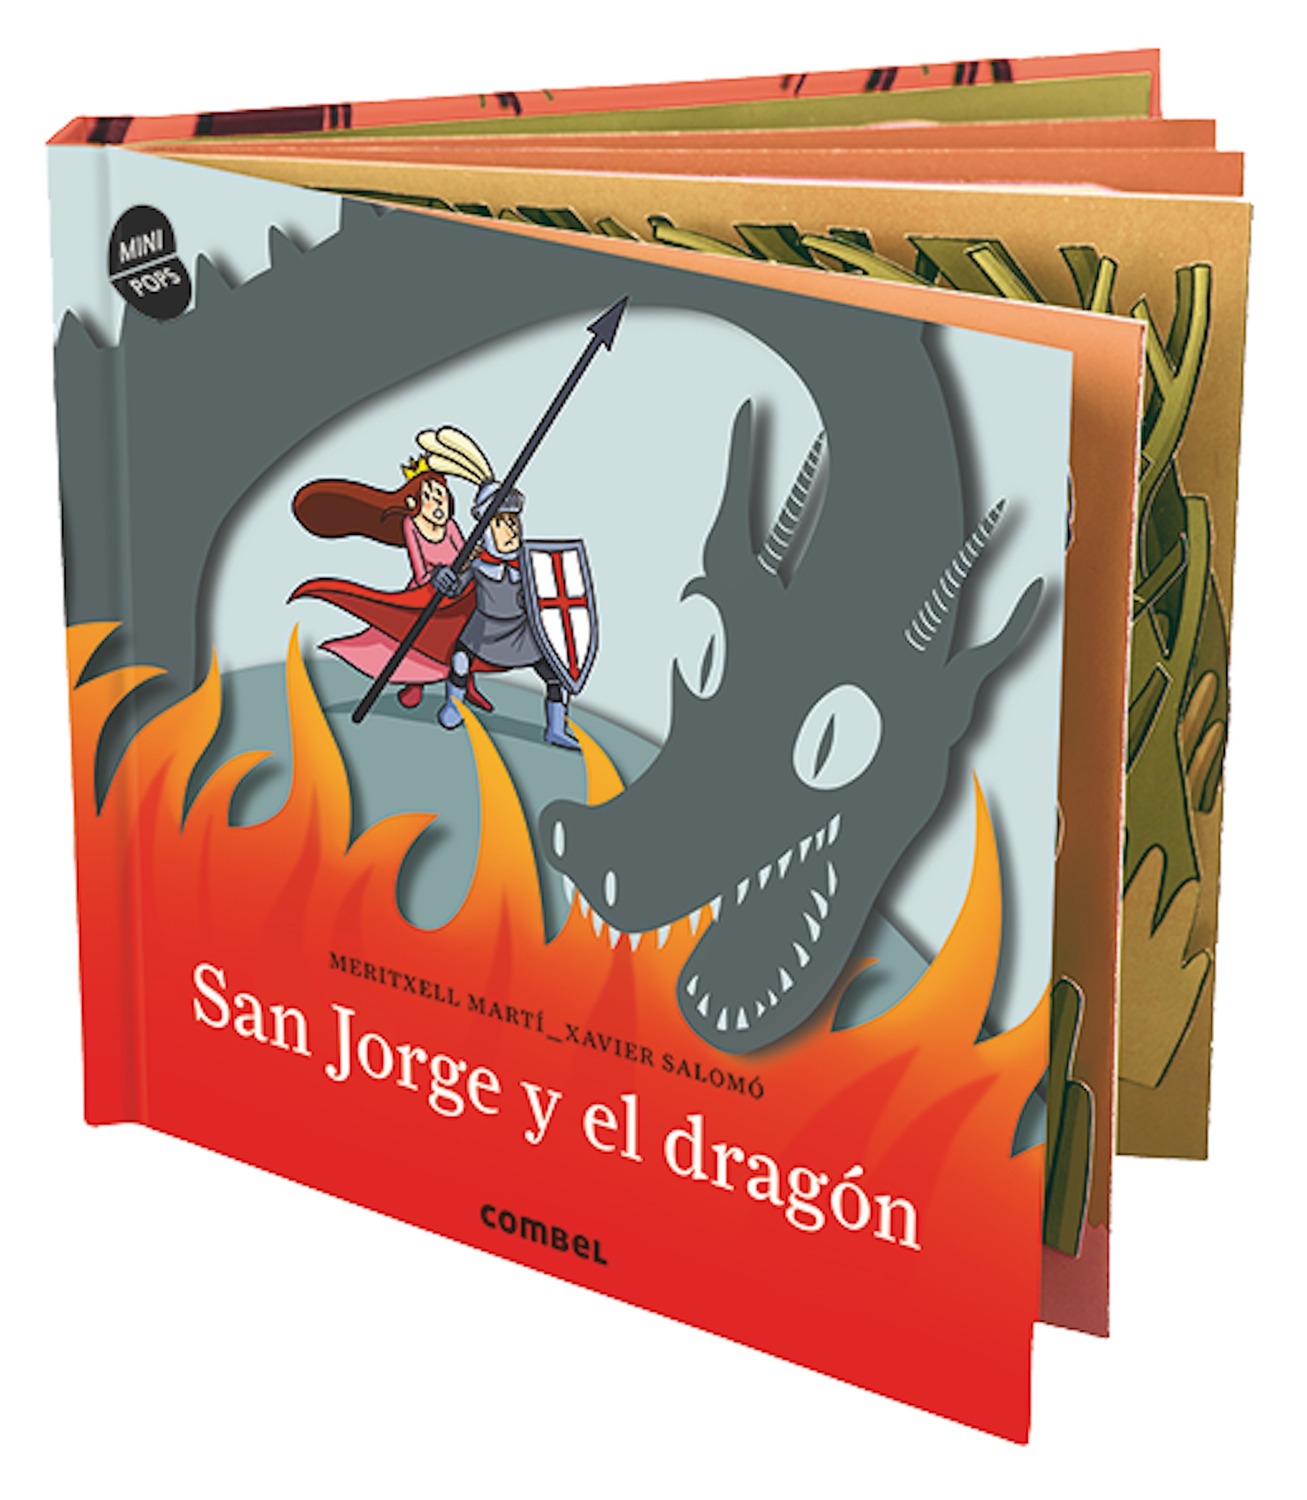 SAN JORGE Y EL DRAGON MINIPOPS